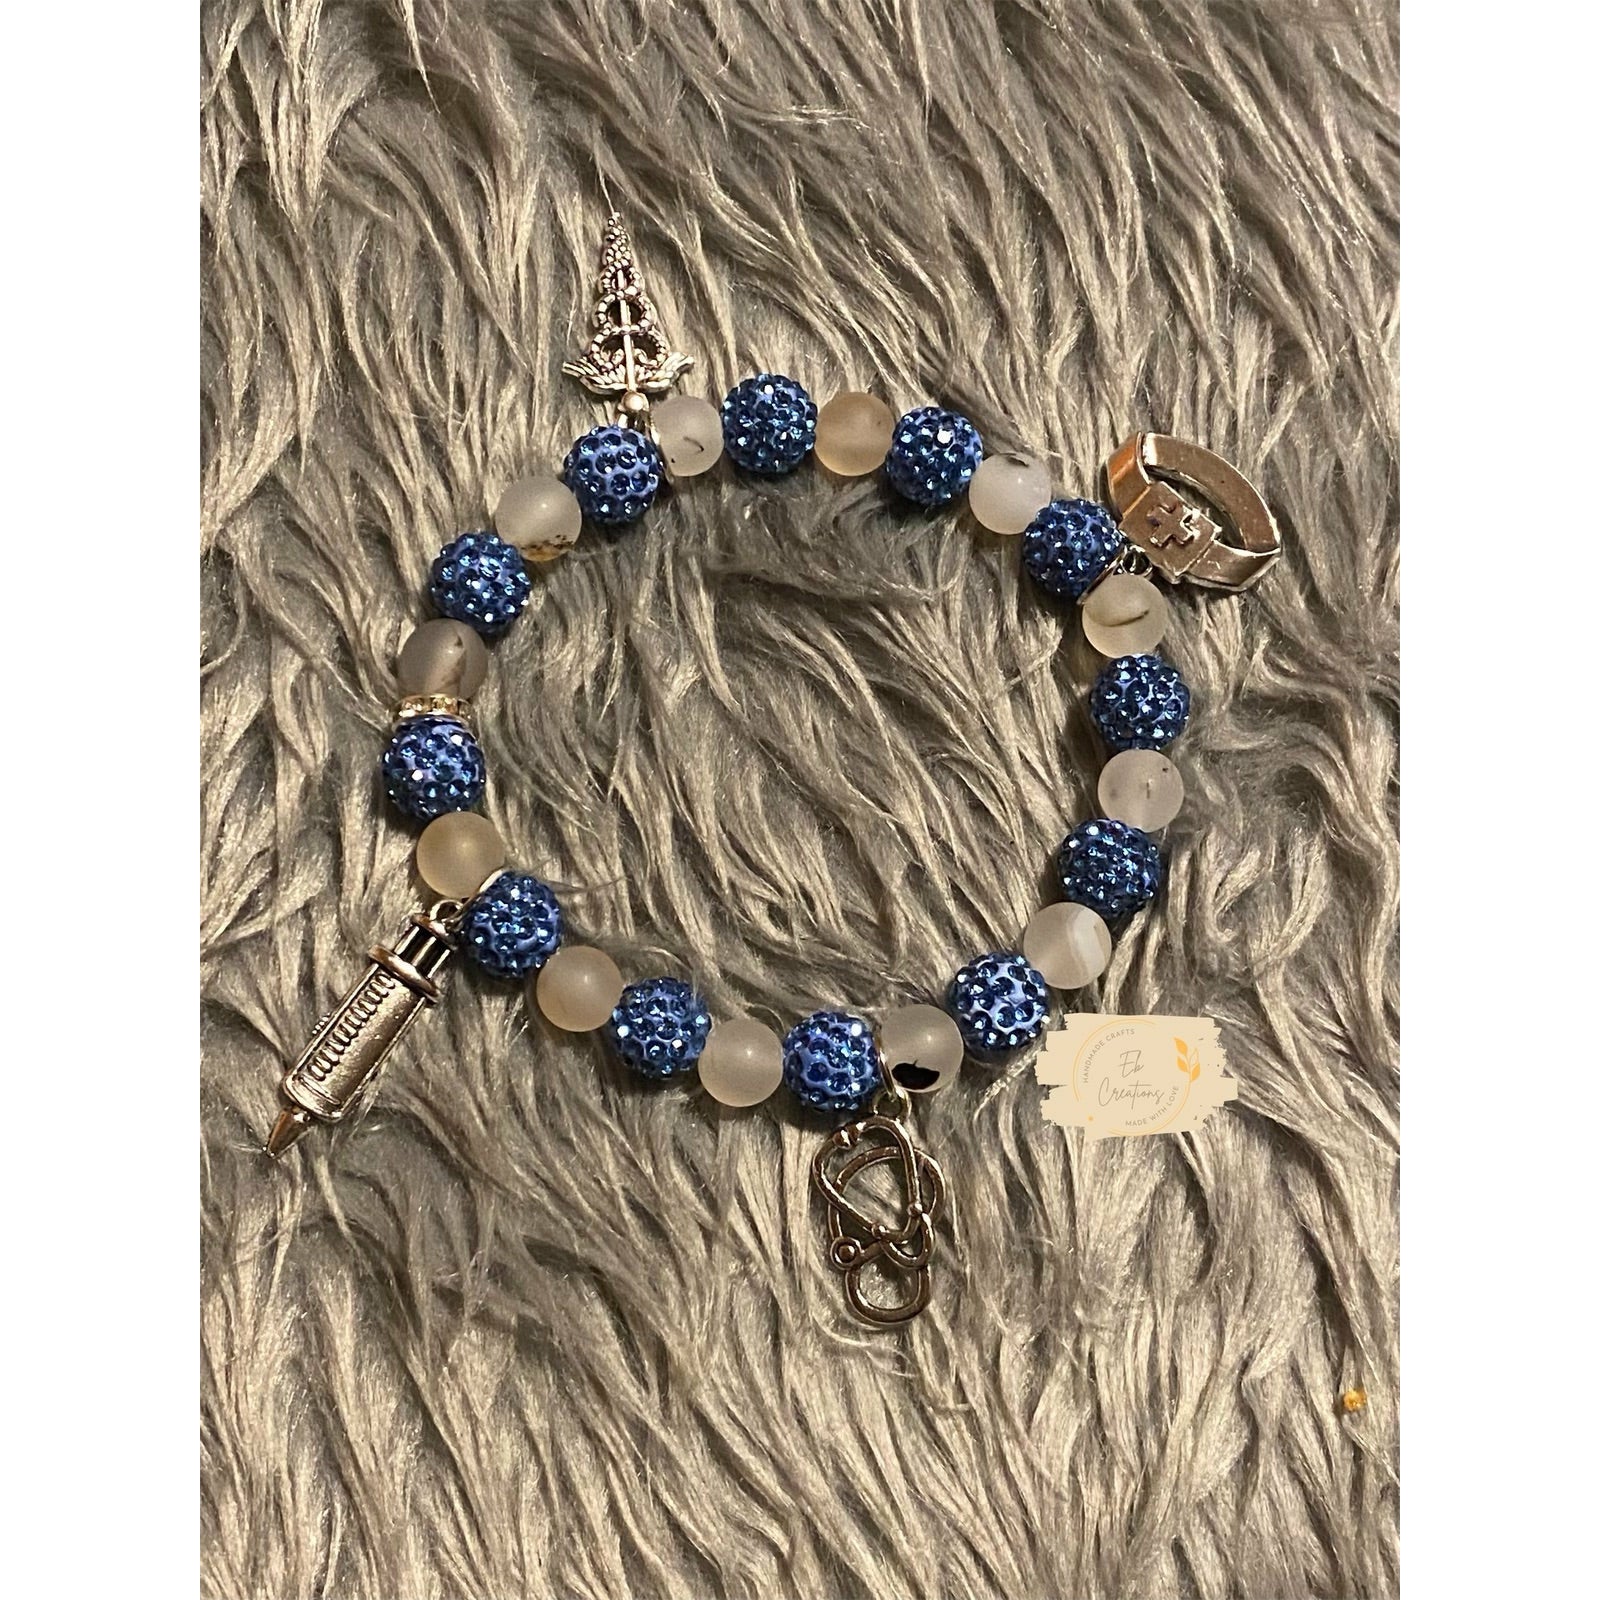 Blue Glitter & White Howlite nursing charm beaded bracelet - Eb Creations Bracelets Blue Glitter & White Howlite nursing charm beaded bracelet